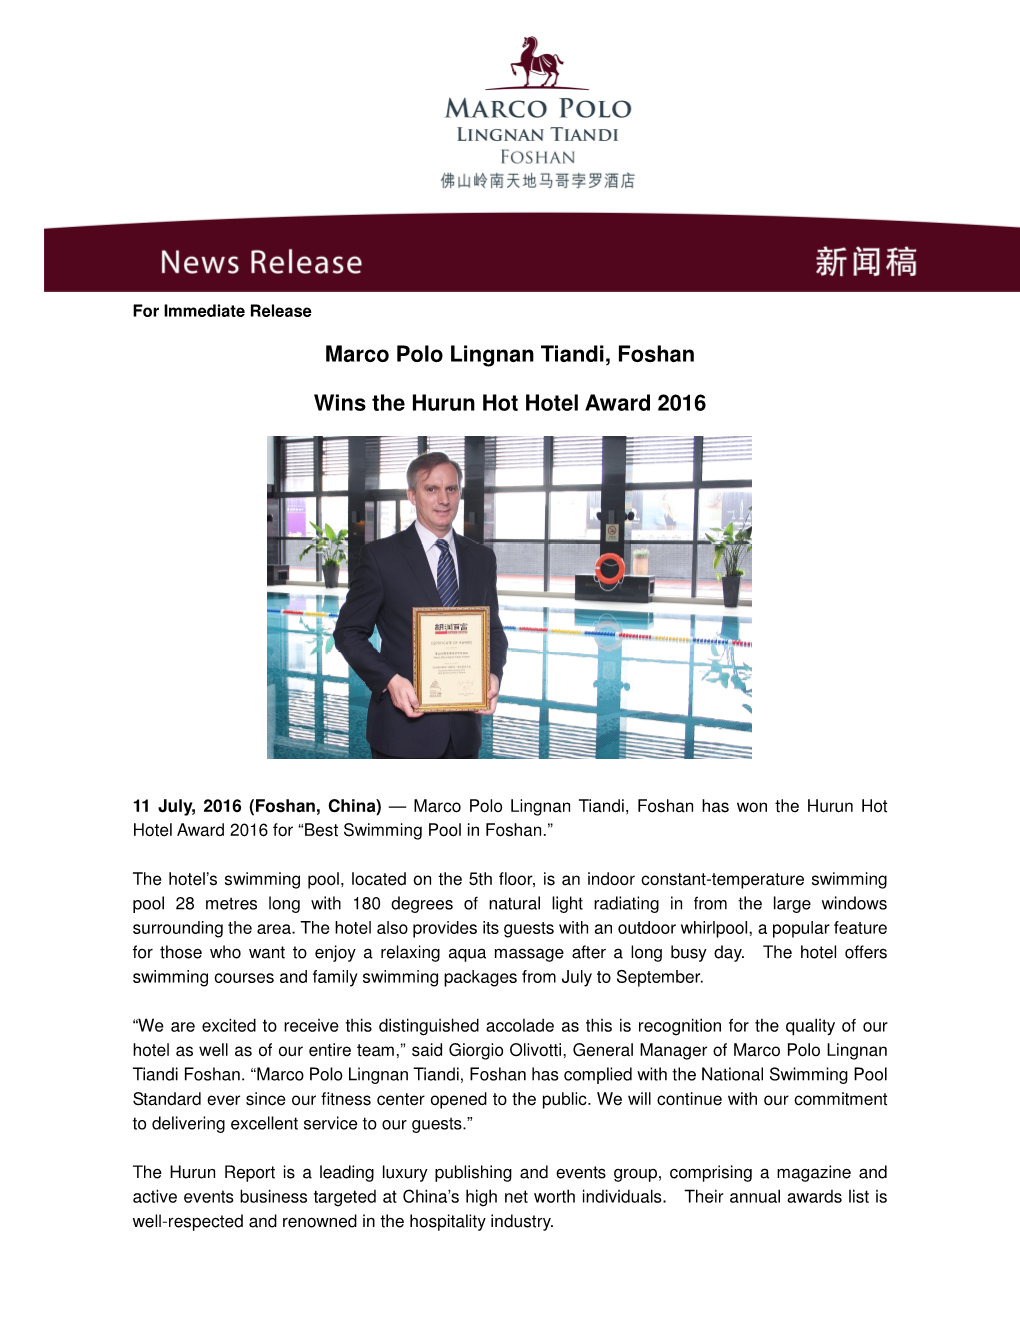 Marco Polo Lingnan Tiandi, Foshan Wins the Hurun Hot Hotel Award 2016